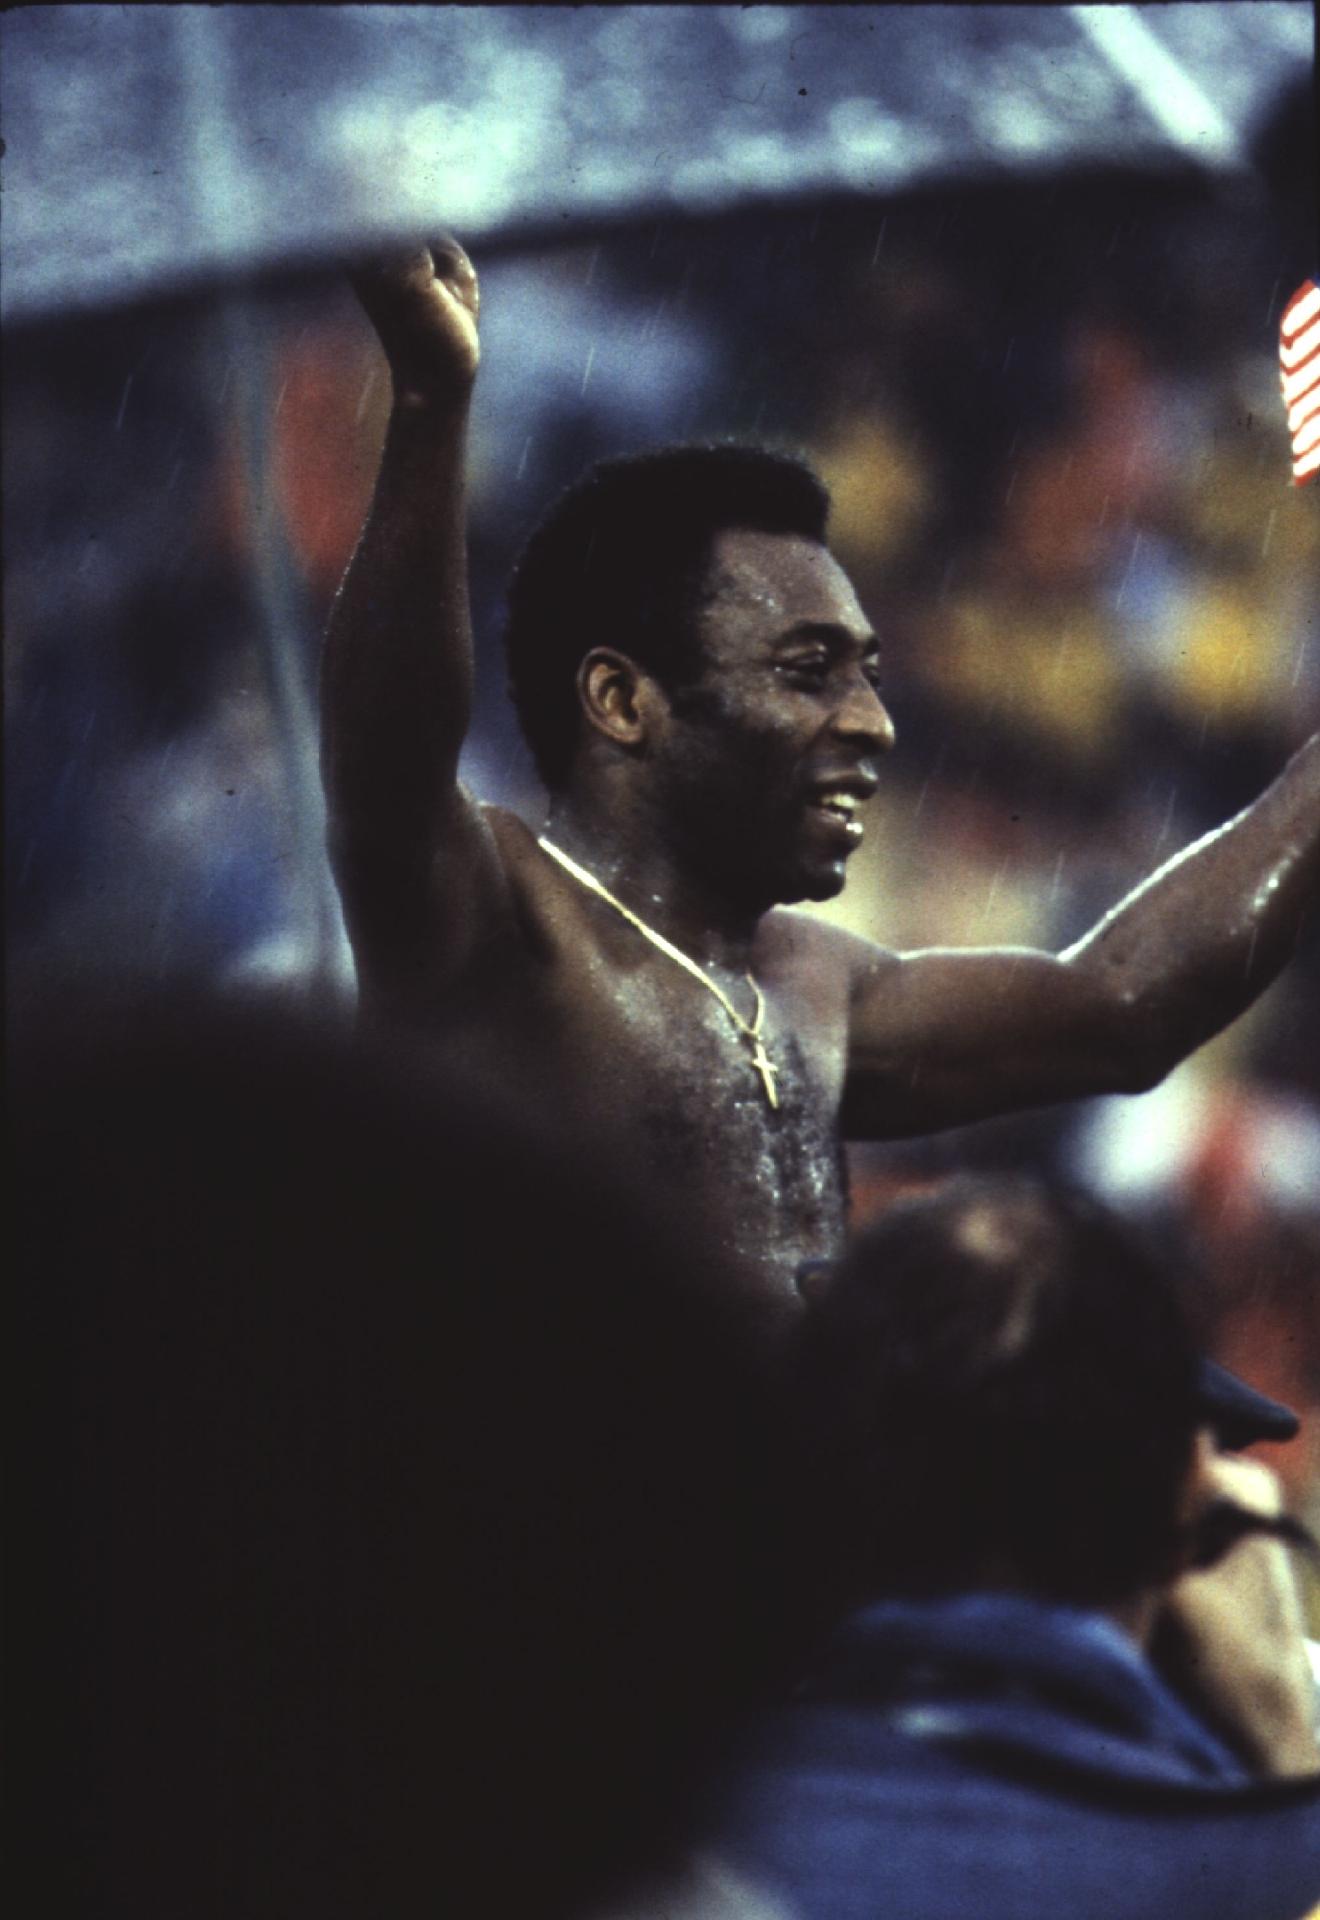 01.out.1977 - Pelé fotografado em campo com a camisa do Santos FC durante sua última partida como jogador de futebol profissional. O jogo de número 1.116 do craque foi diante da Ponte Preta. - Hulton Archive/Getty Images